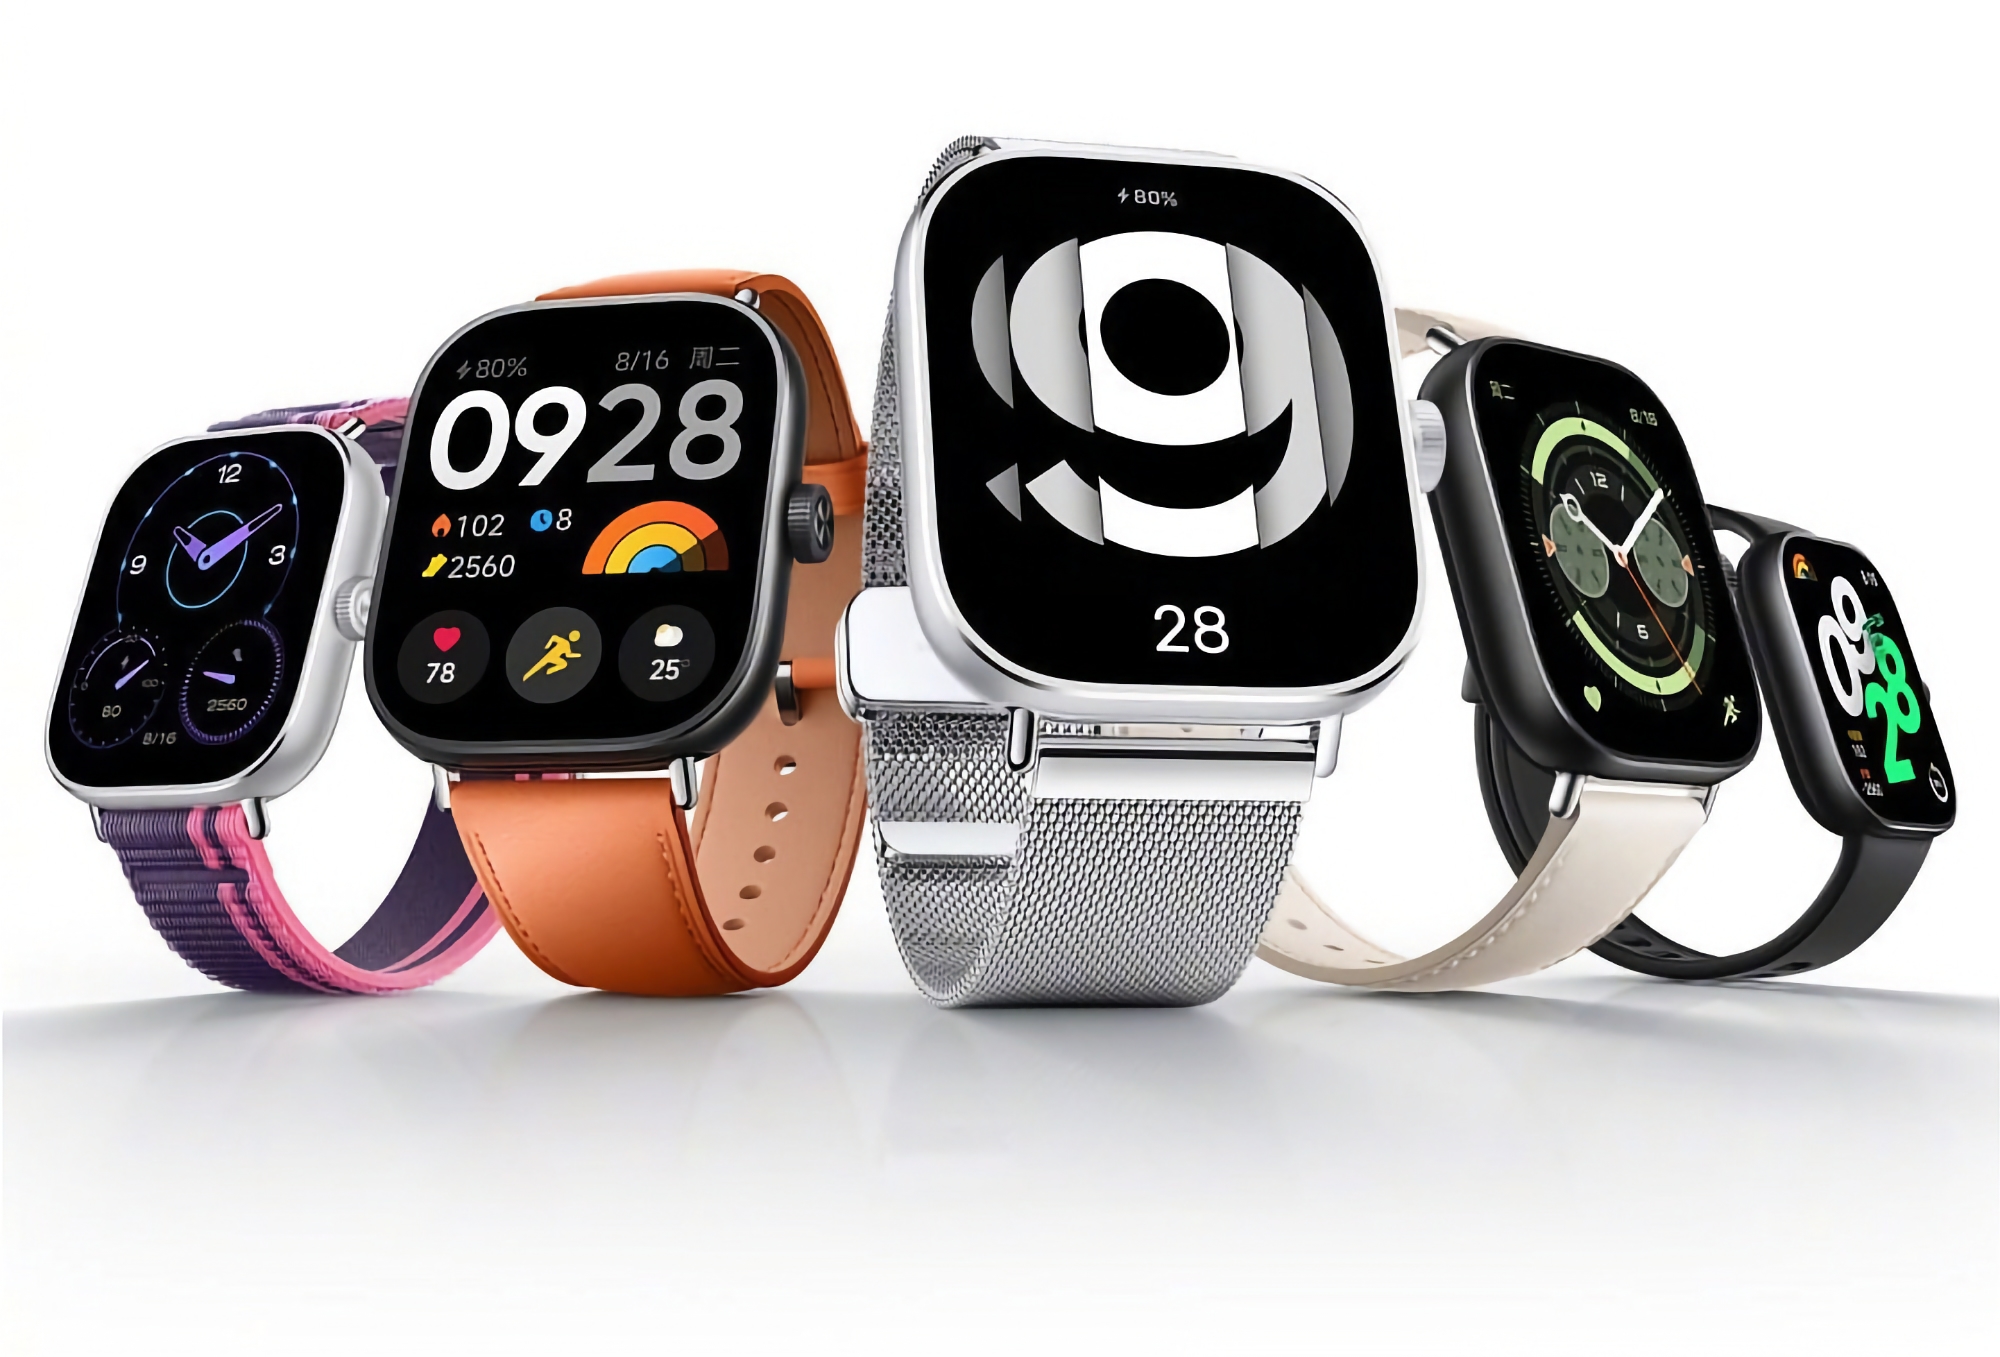 El smartwatch Redmi Watch 4 tendrá una autonomía de hasta 20 días